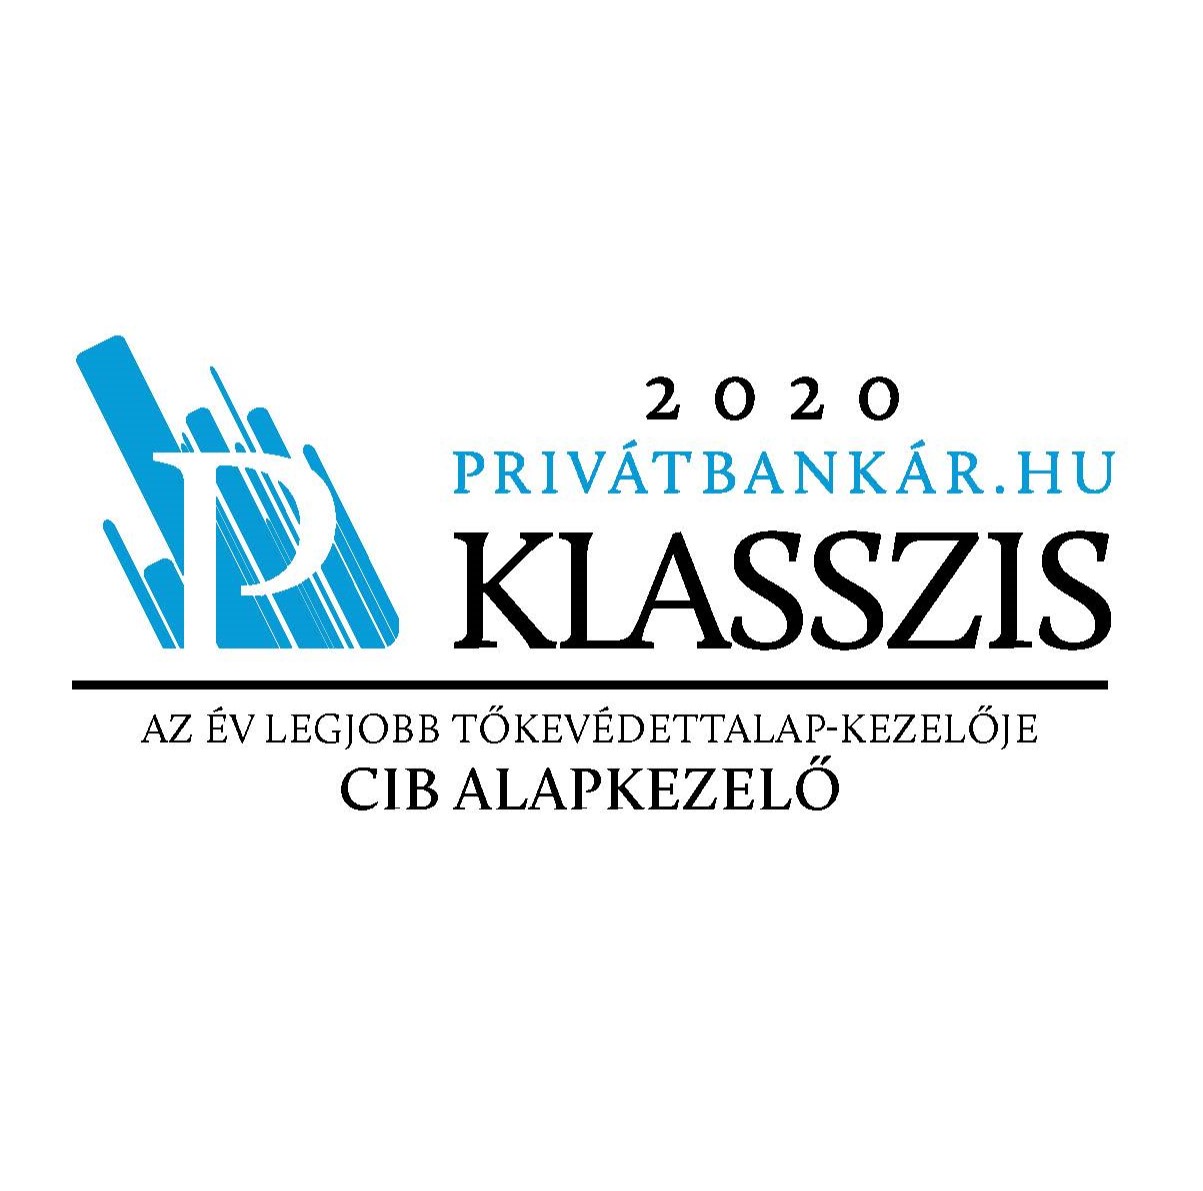 Privátbankár klasszis díj 2020 - az év legjobb tőkevédett alapkezelője CIB Alapkezelő